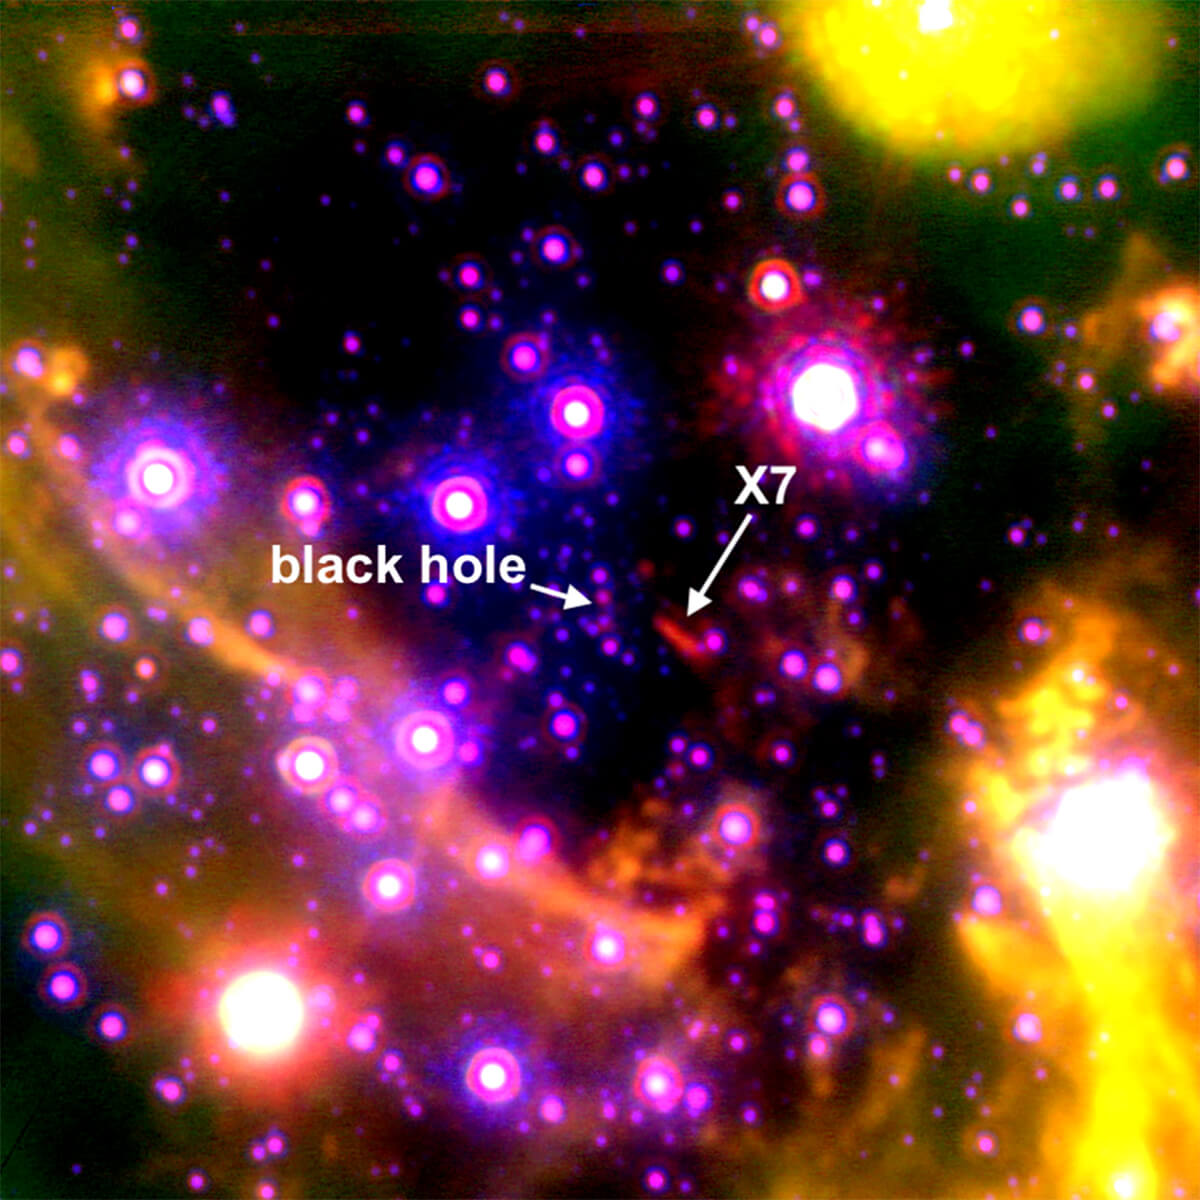 天の川銀河中心部にある謎の天体「X7」【今日の宇宙画像】